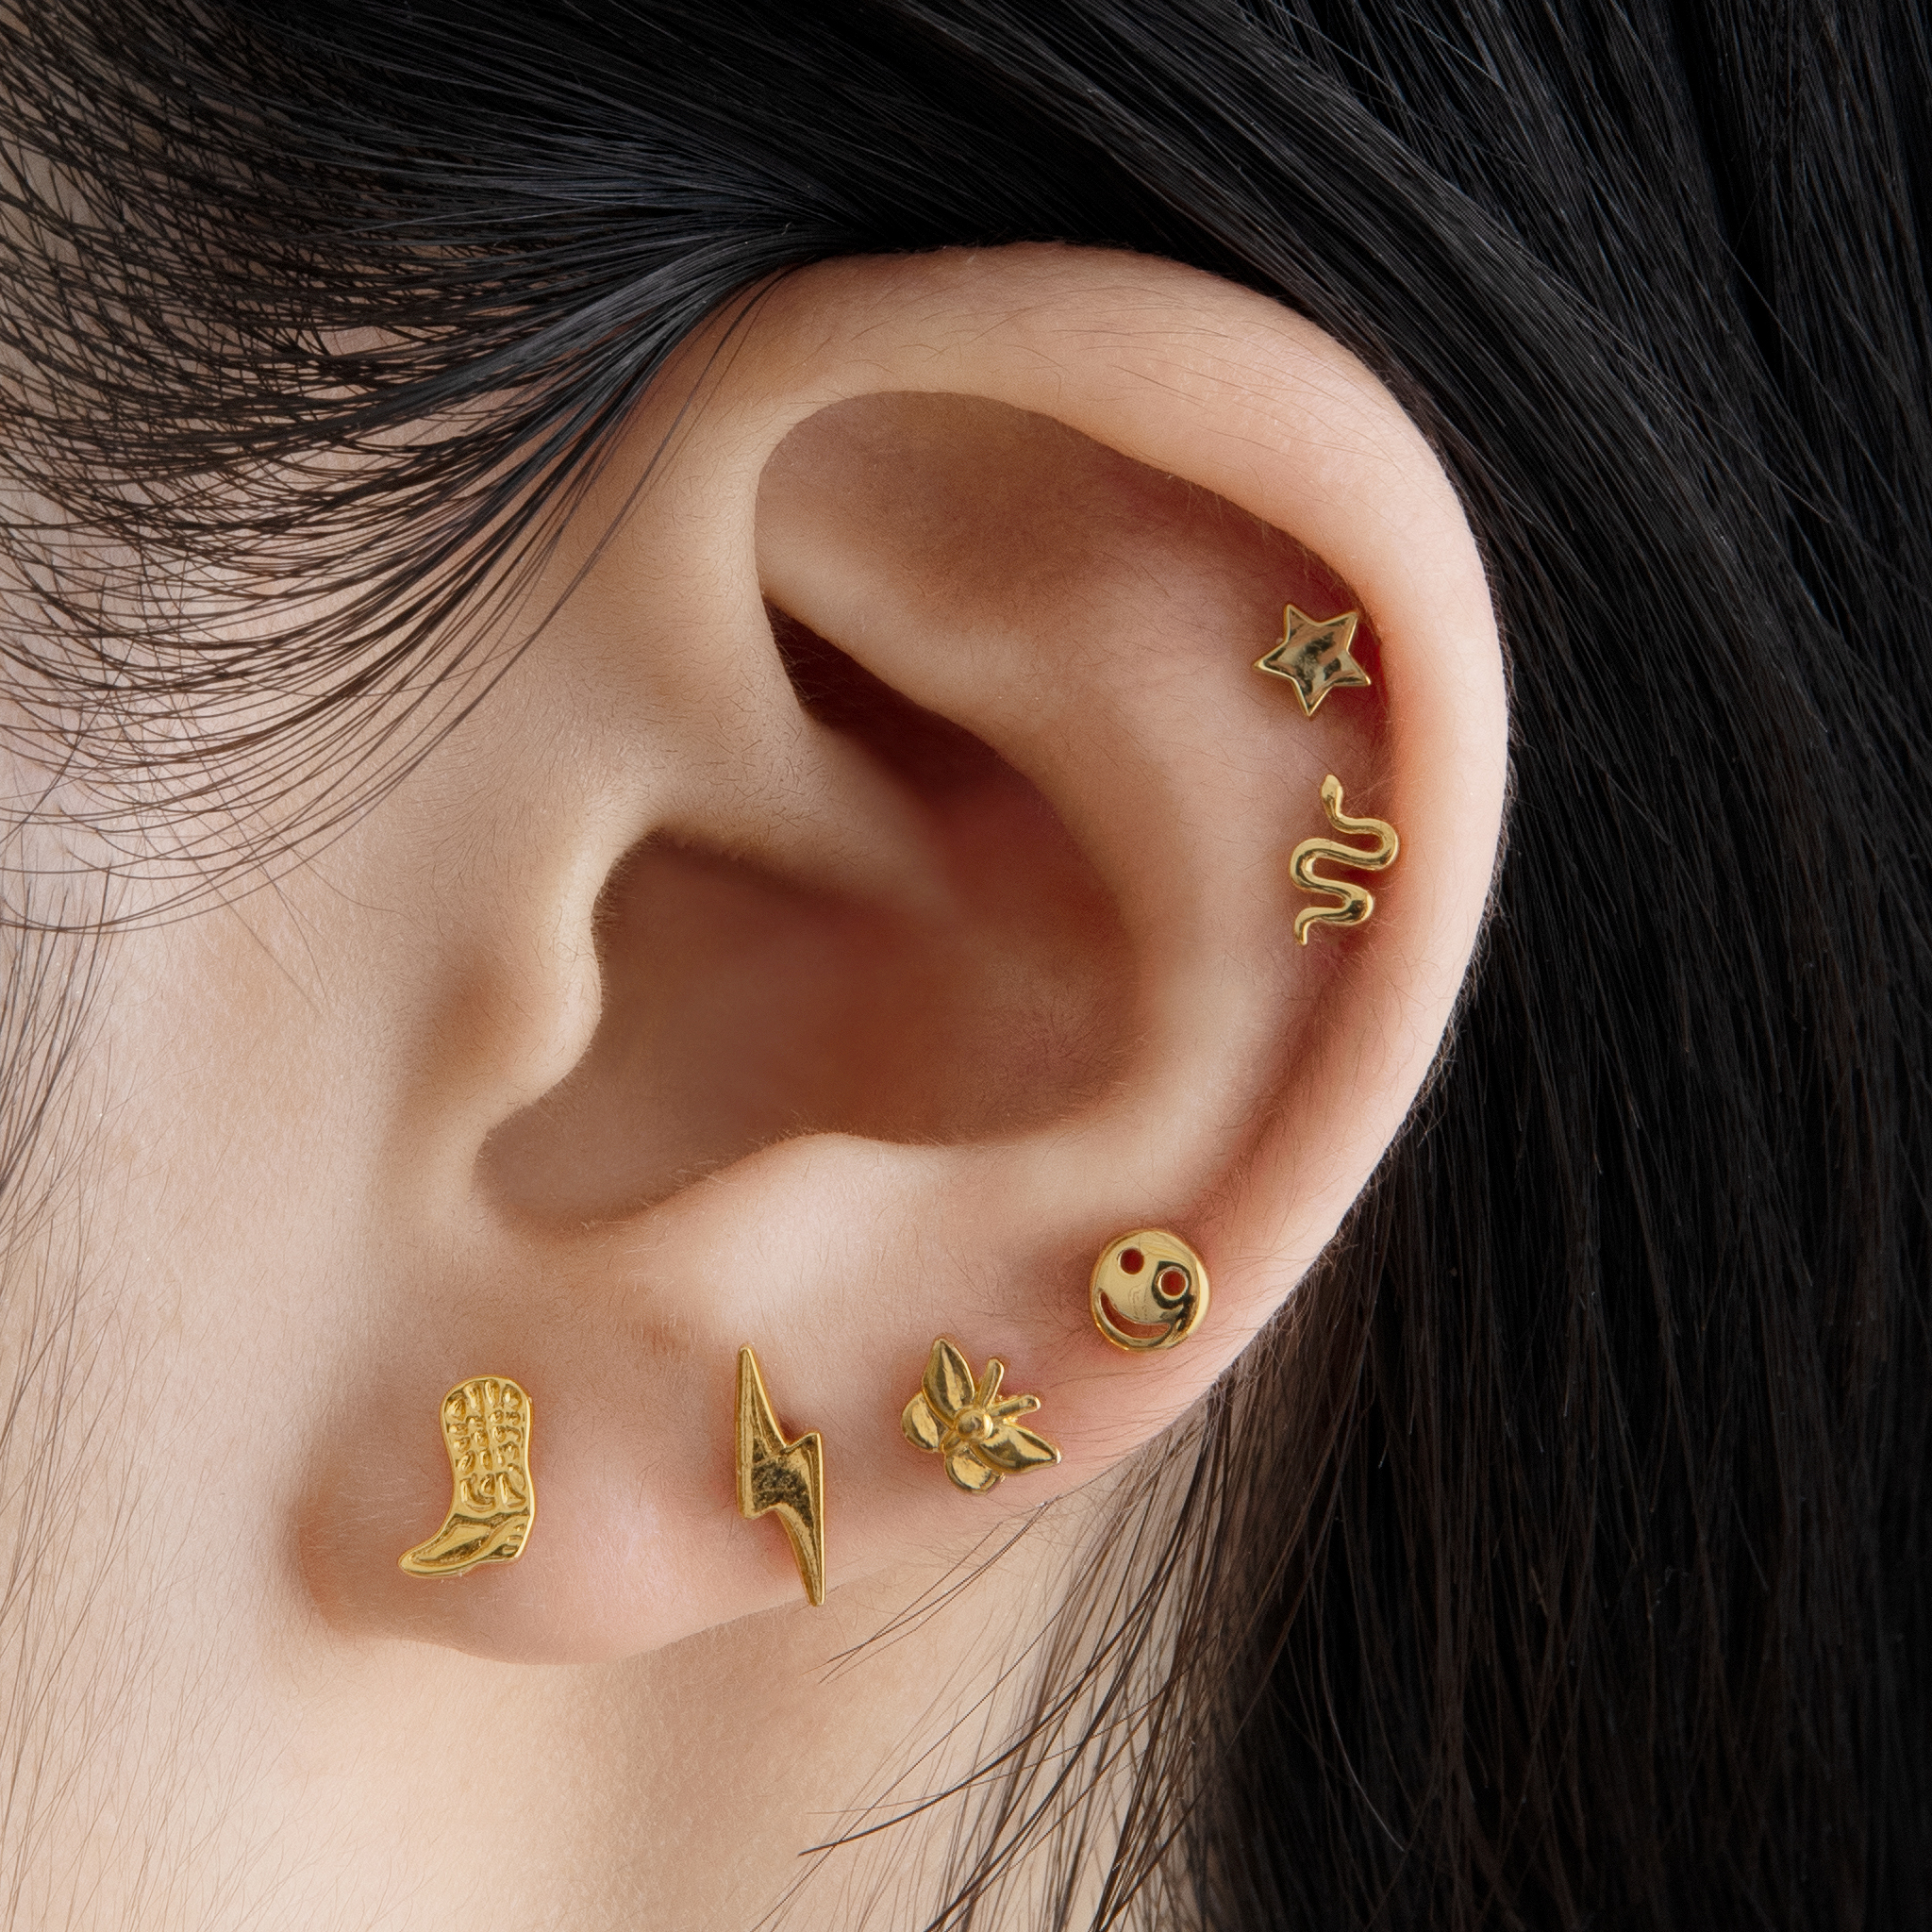 Butterfly Design Stud Earrings | Ear piercing studs, Butterfly earrings stud,  Stud earrings